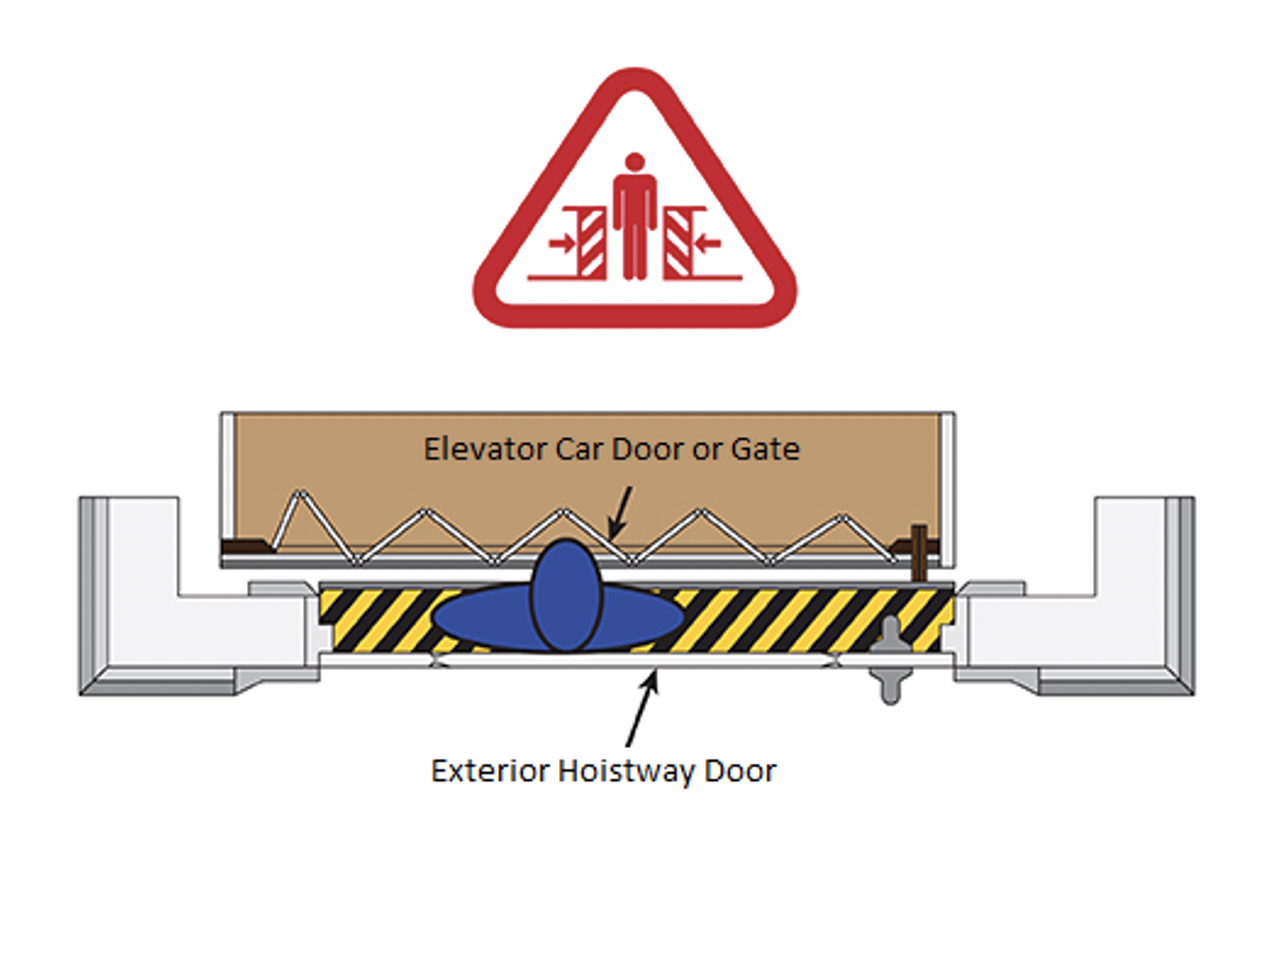 Typical Entrapment Hazard Scenario Depicting Child Trapped Between the Exterior Hoistway Door and Interior Elevator Car Door or Gate